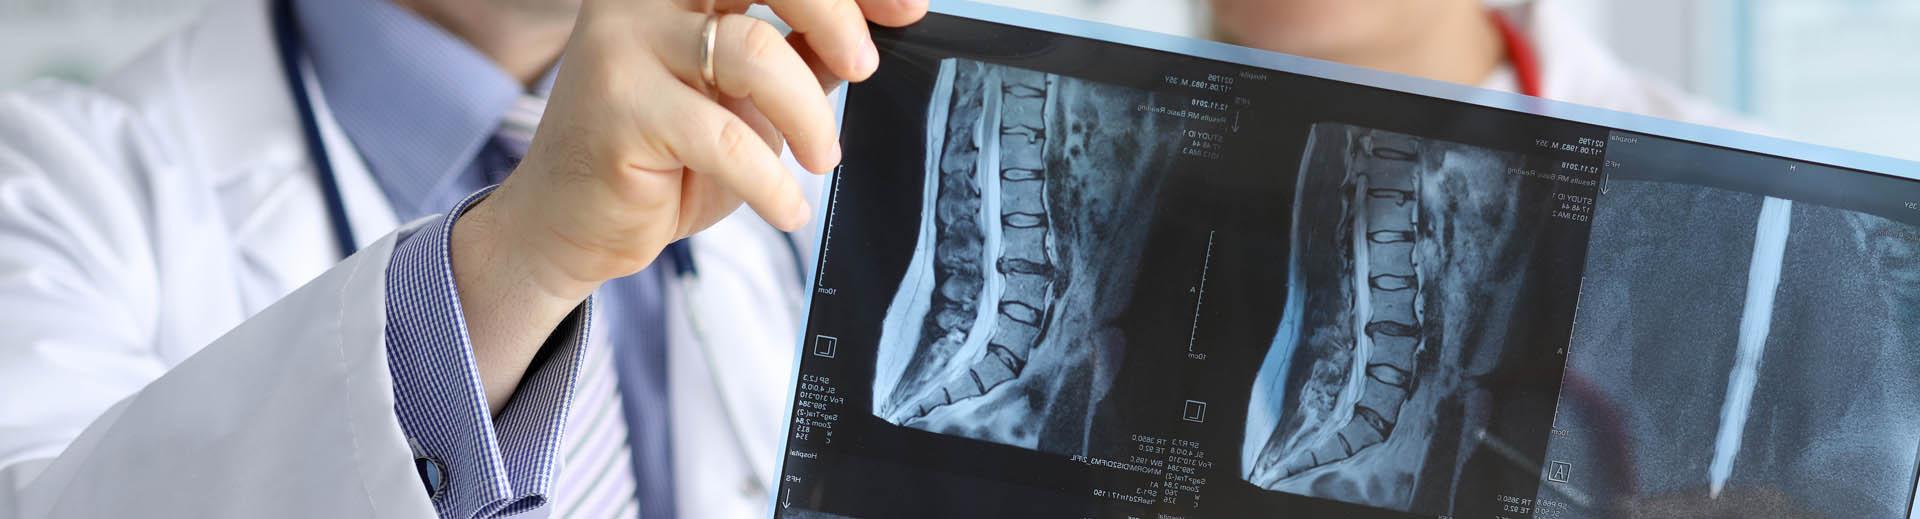 Ärzte betrachten Röntgenbild der Wirbelsäule